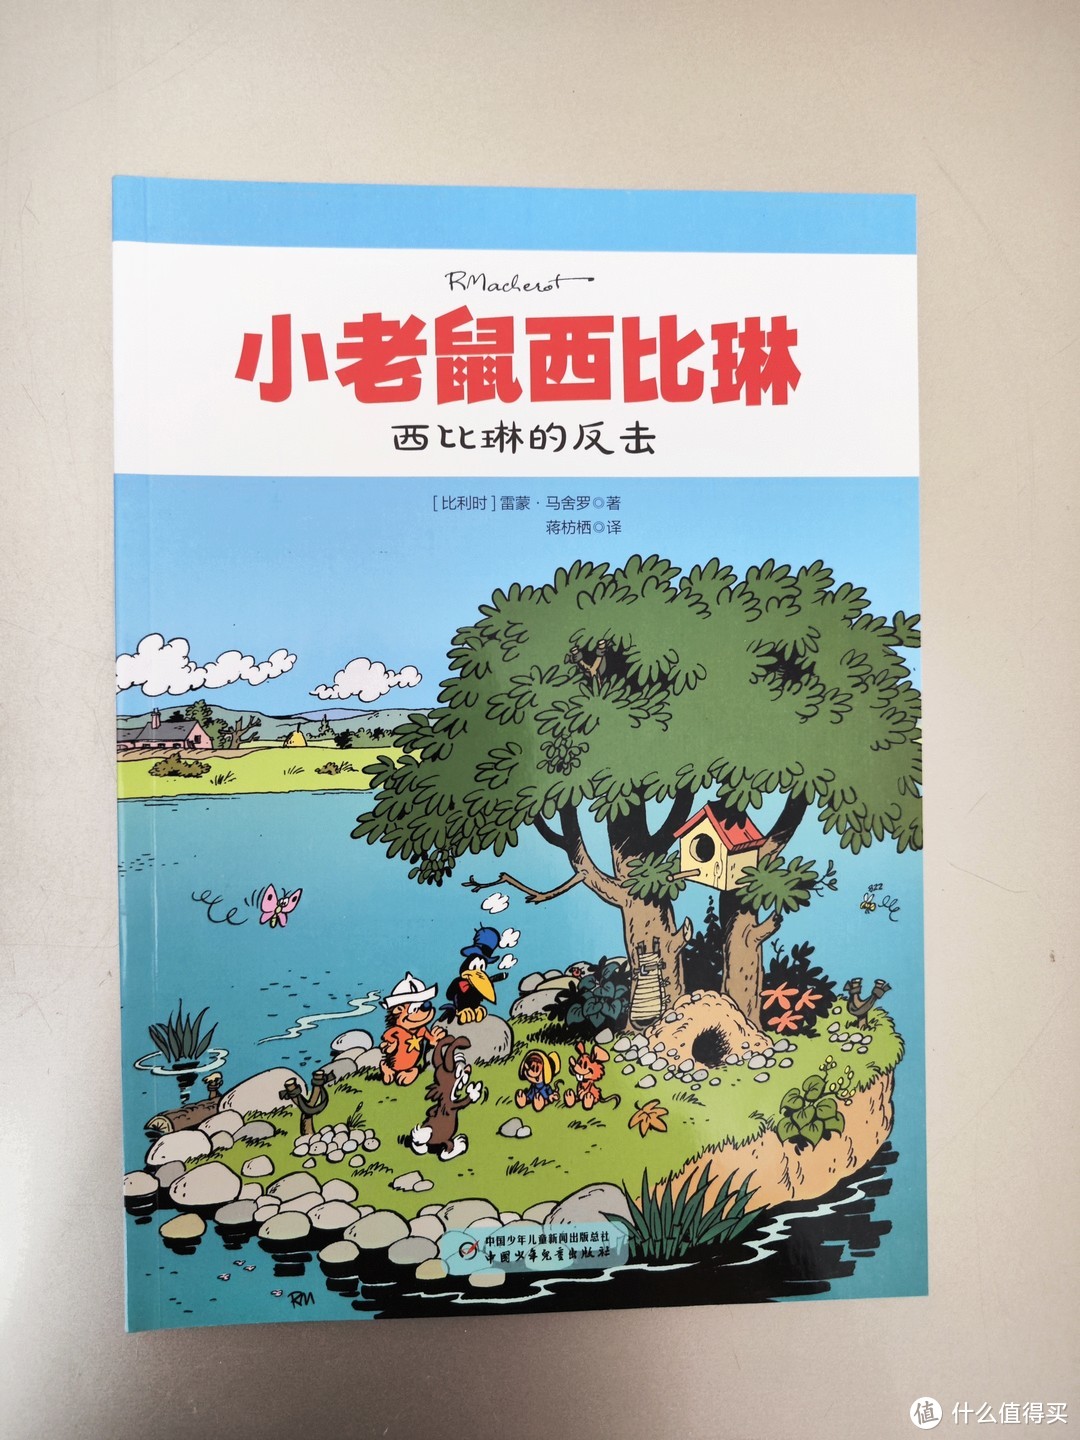 中国少年儿童出版社《小老鼠西比琳》小晒